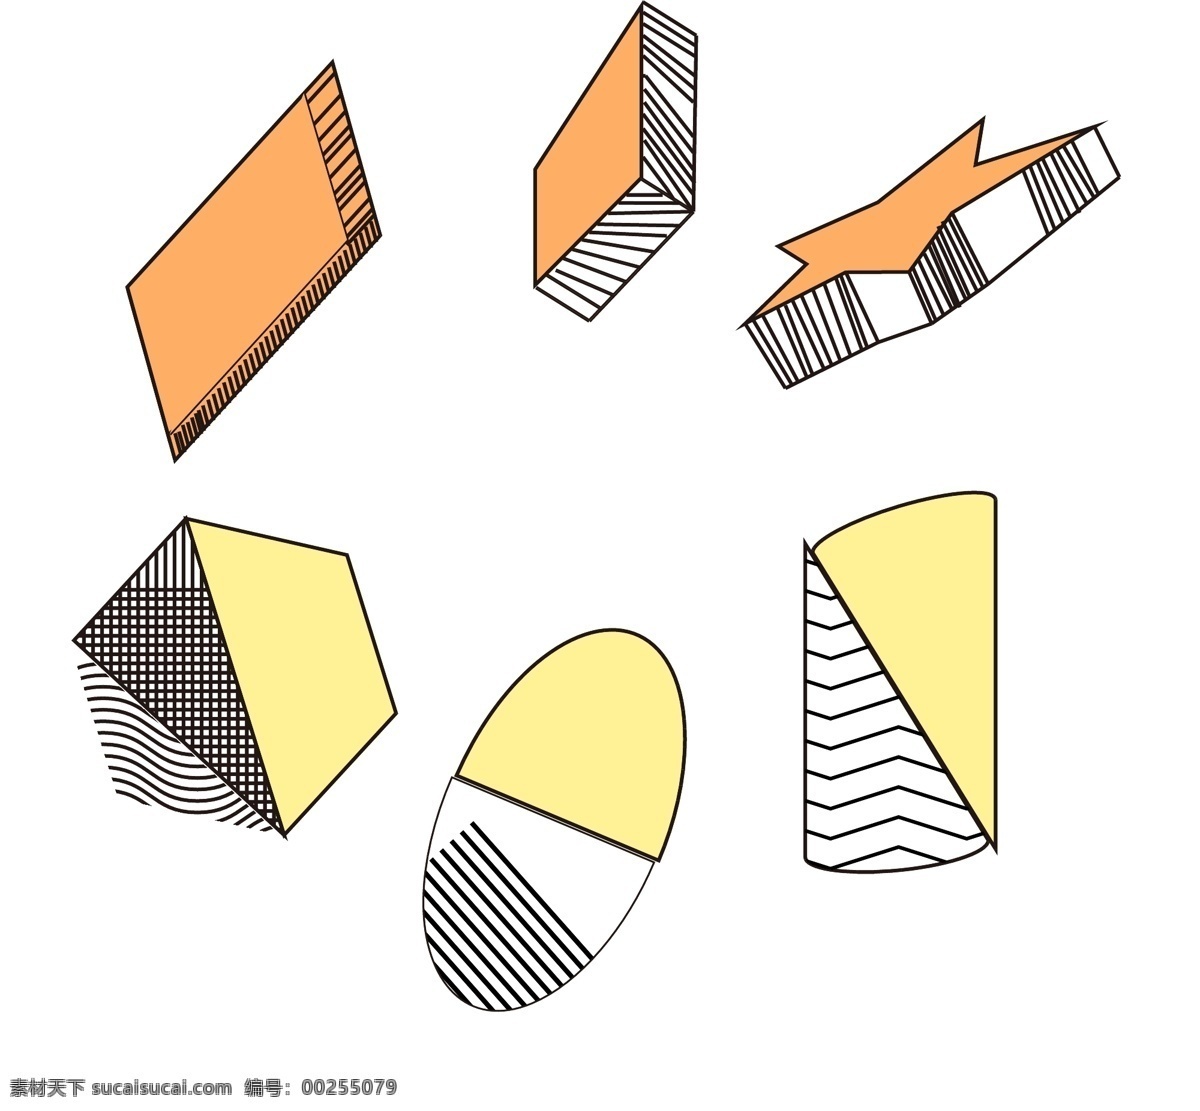 孟菲斯 几何体 合集 简约 彩色 趋势元素